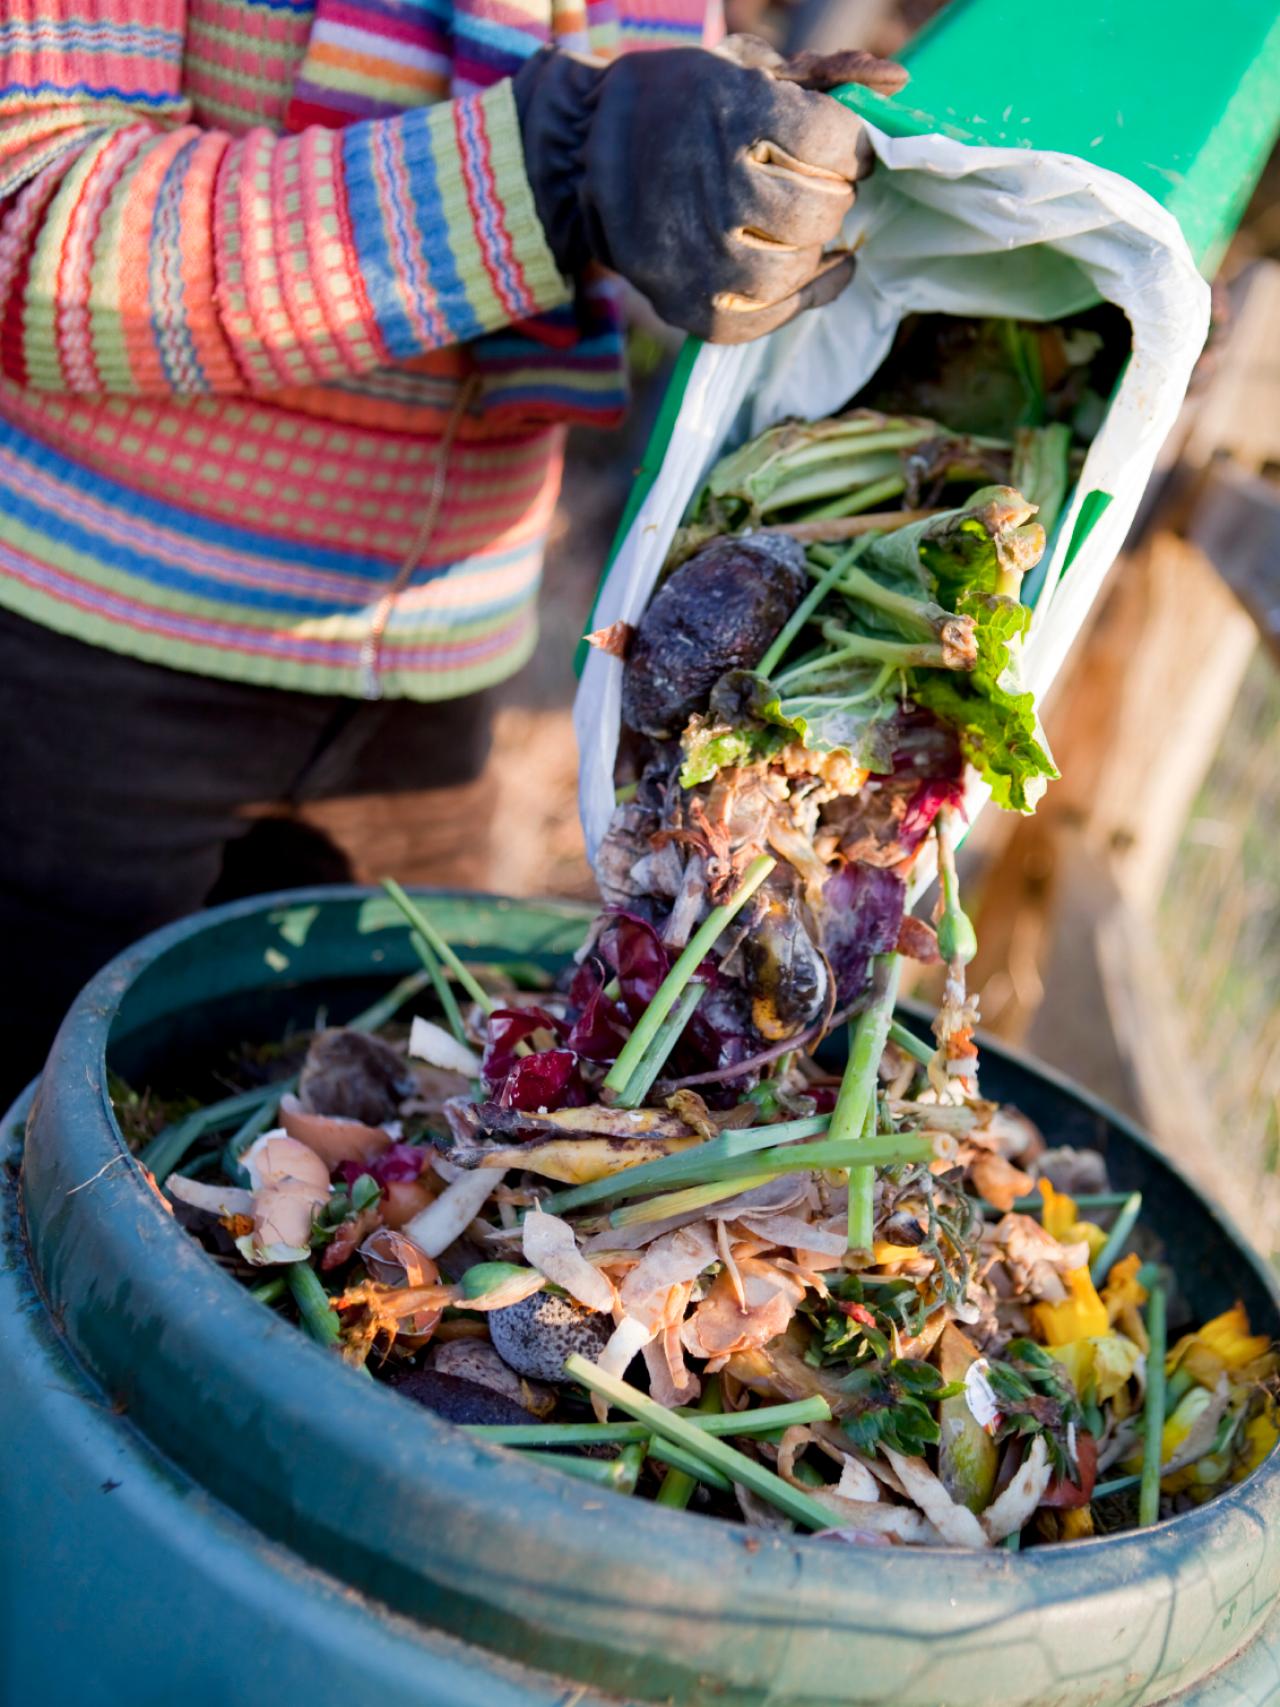 How to Compost Kitchen Waste | HGTV